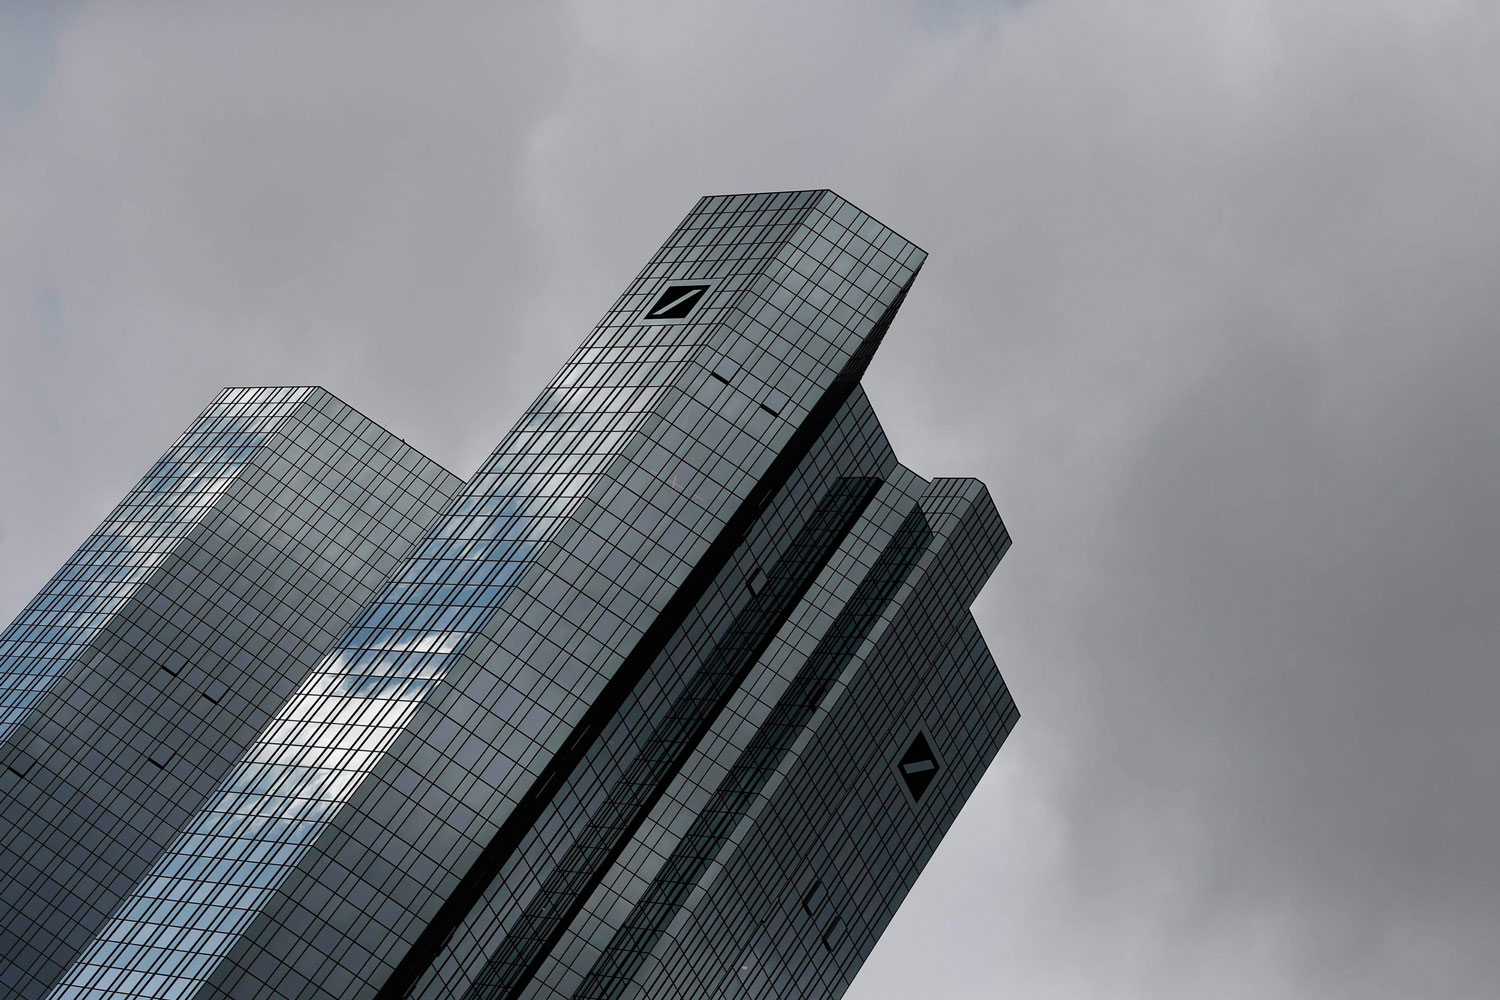 Varios bancos europeos siguen en litigios con las autoridades reguladoras de su país